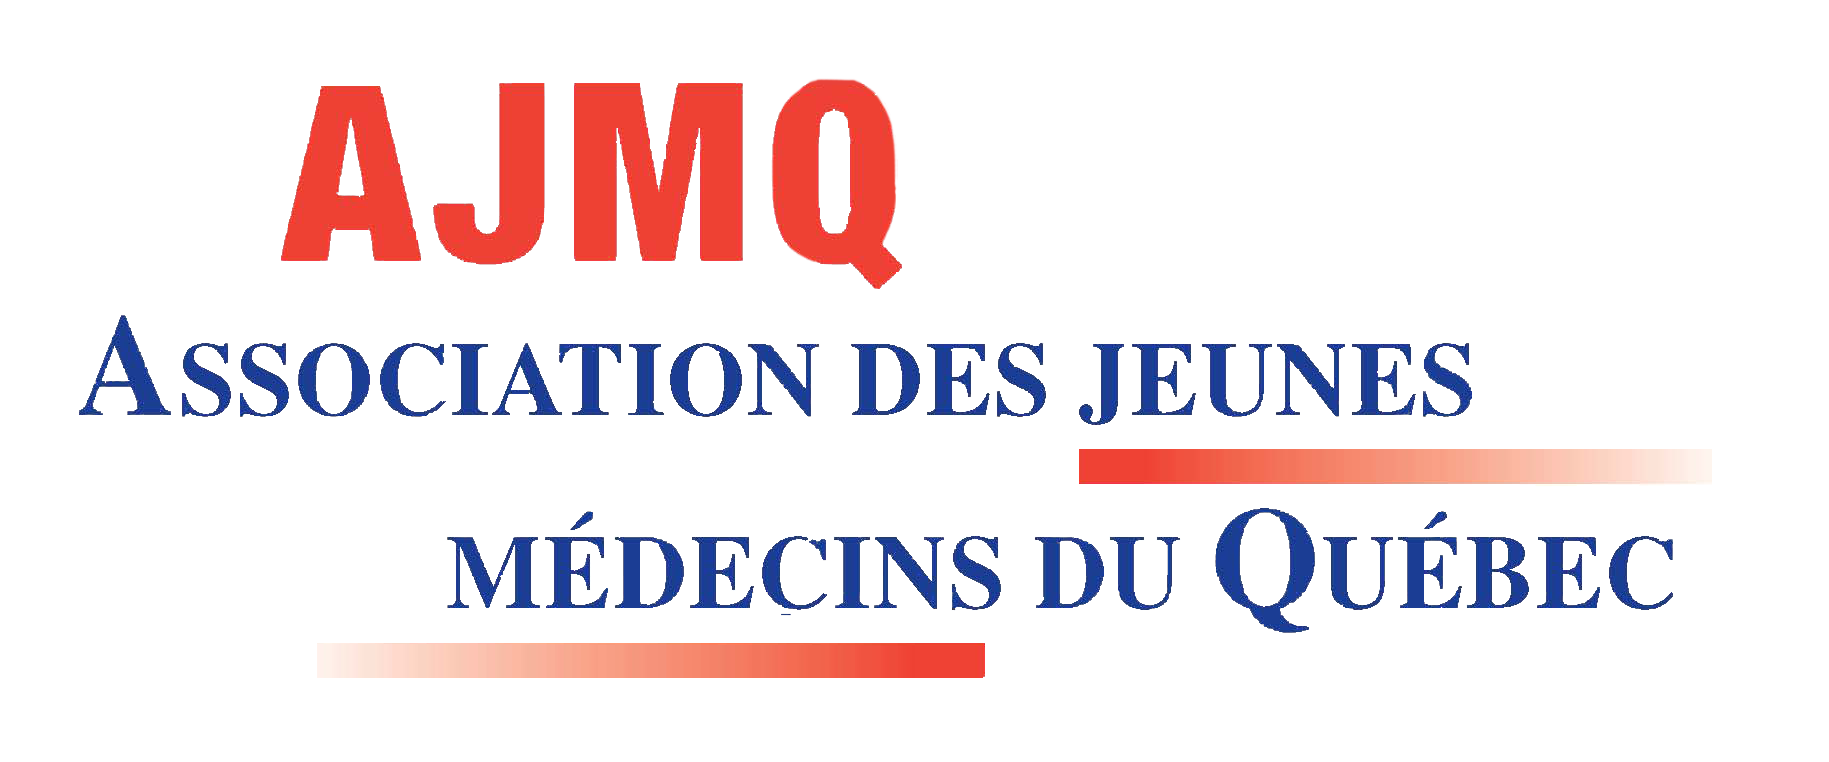 Association des jeunes médecins du Québec